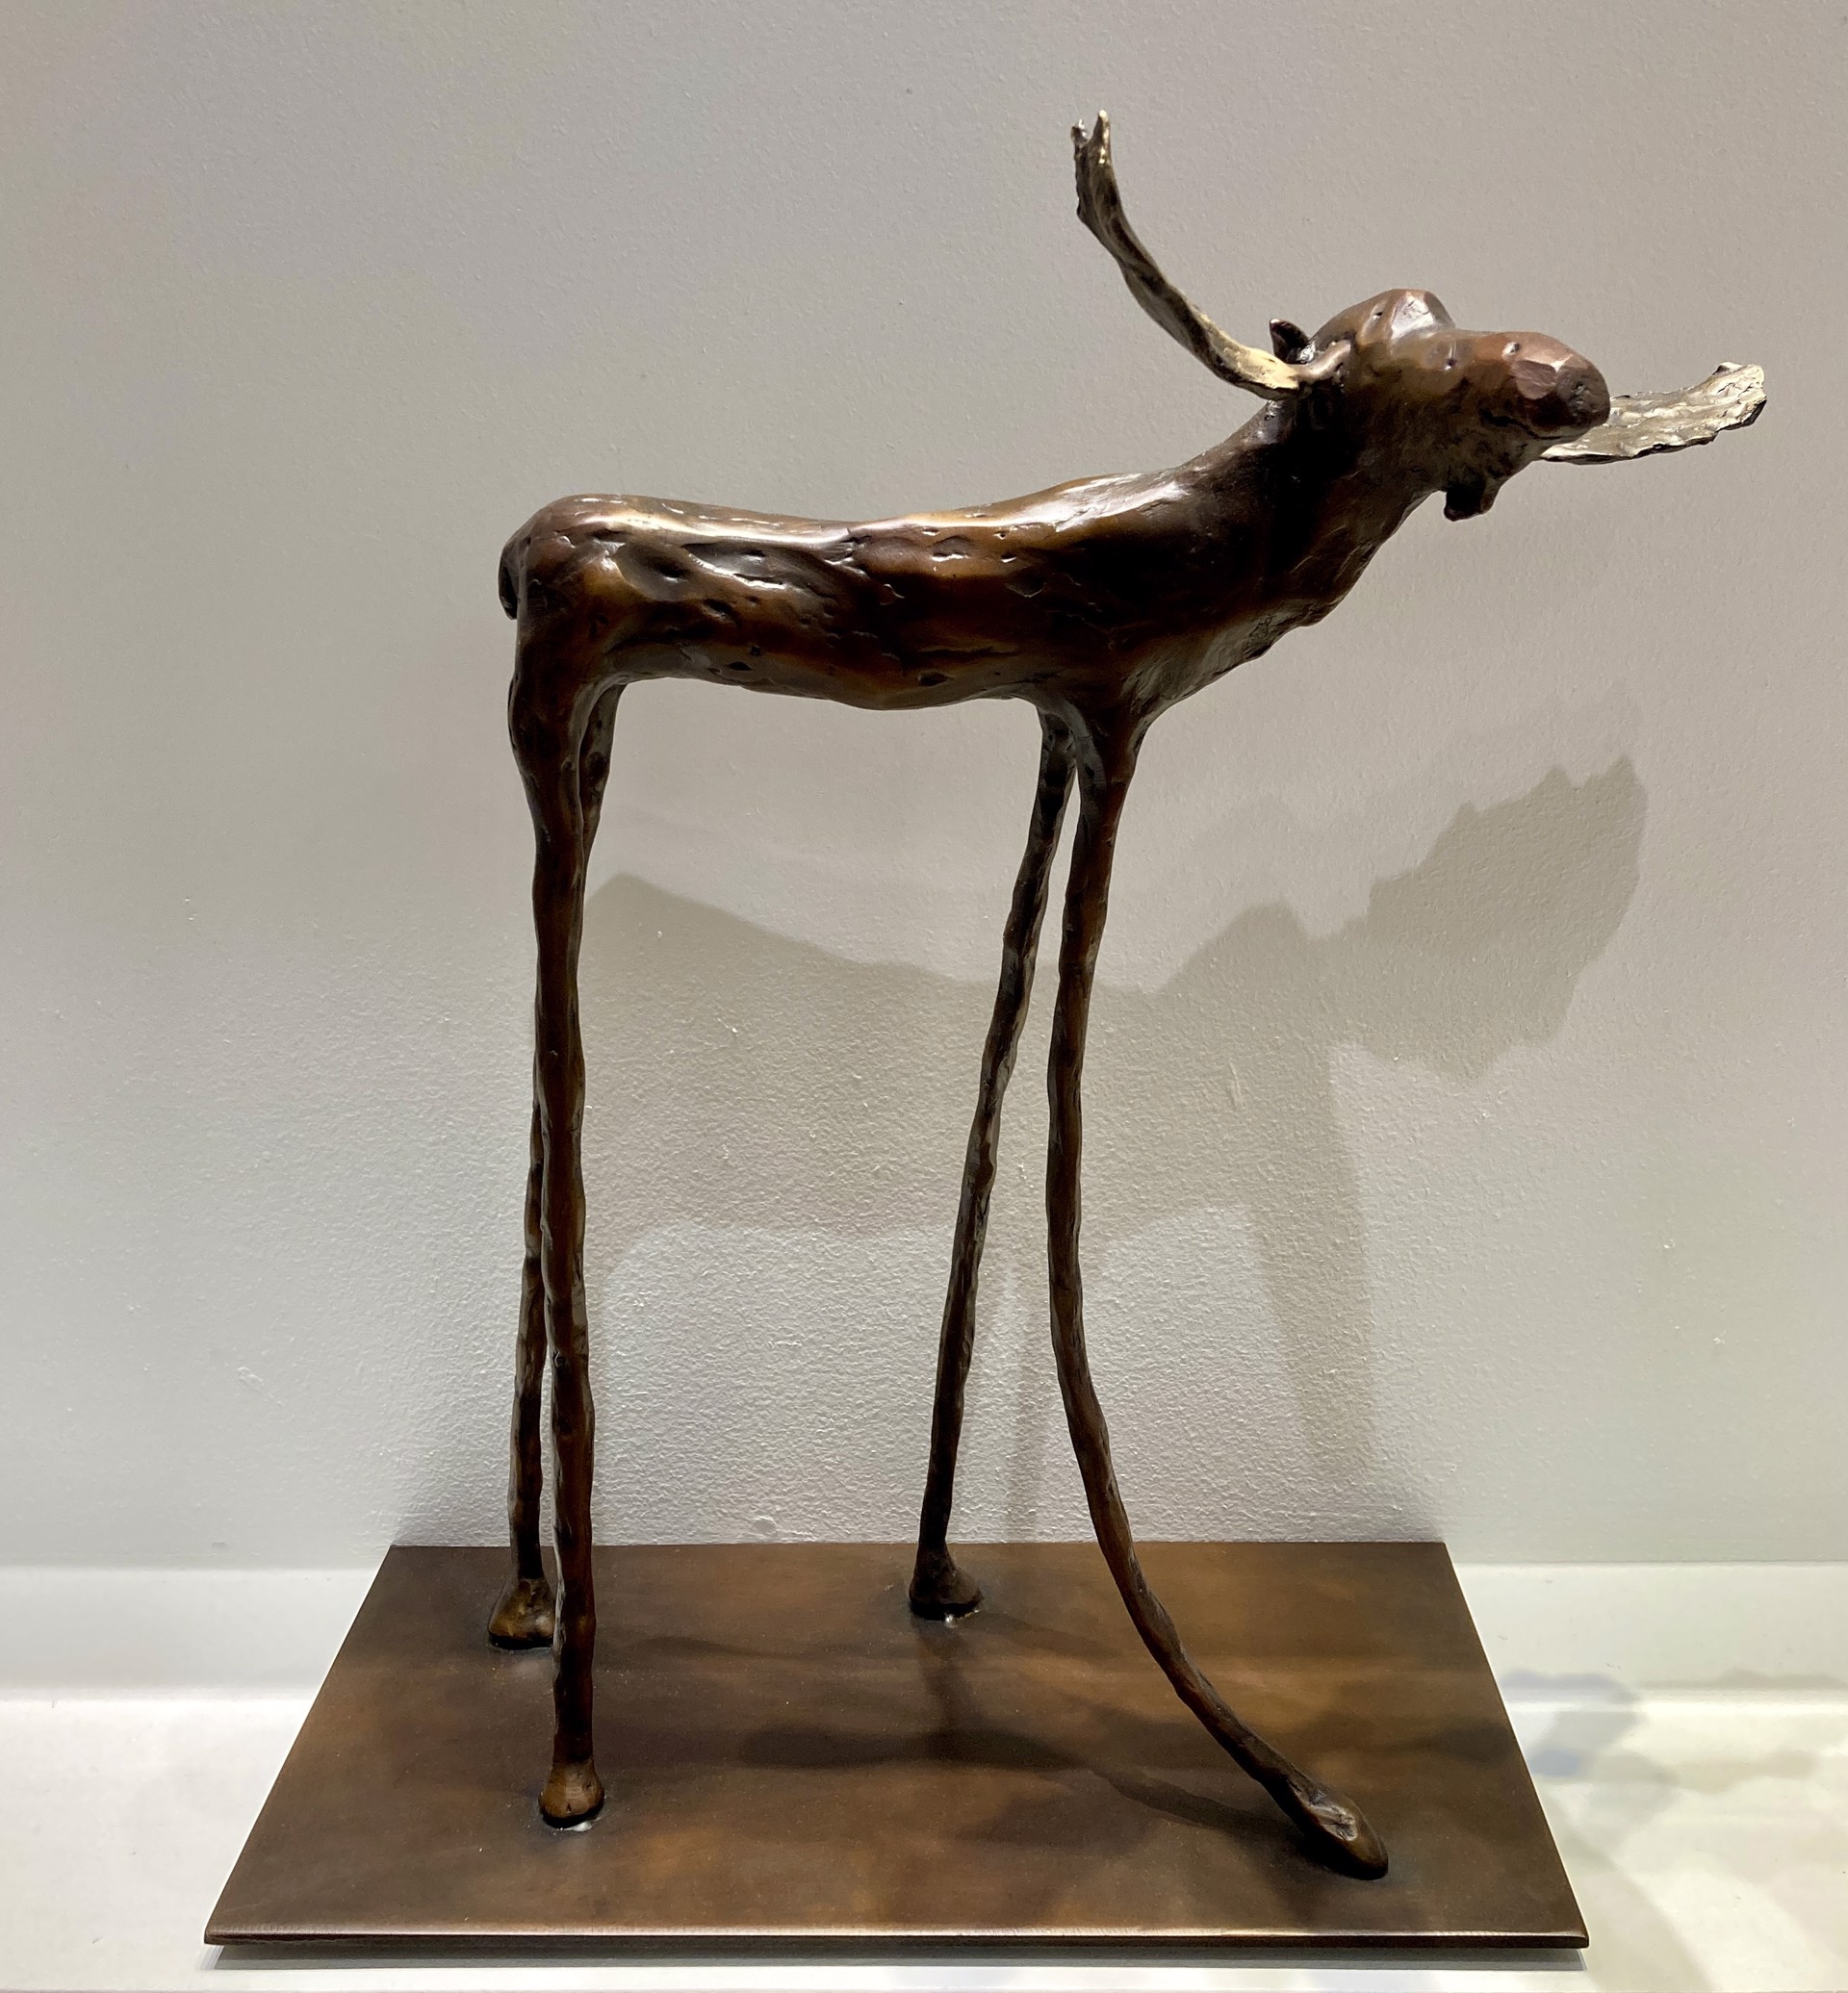 Moose by Jim Budish